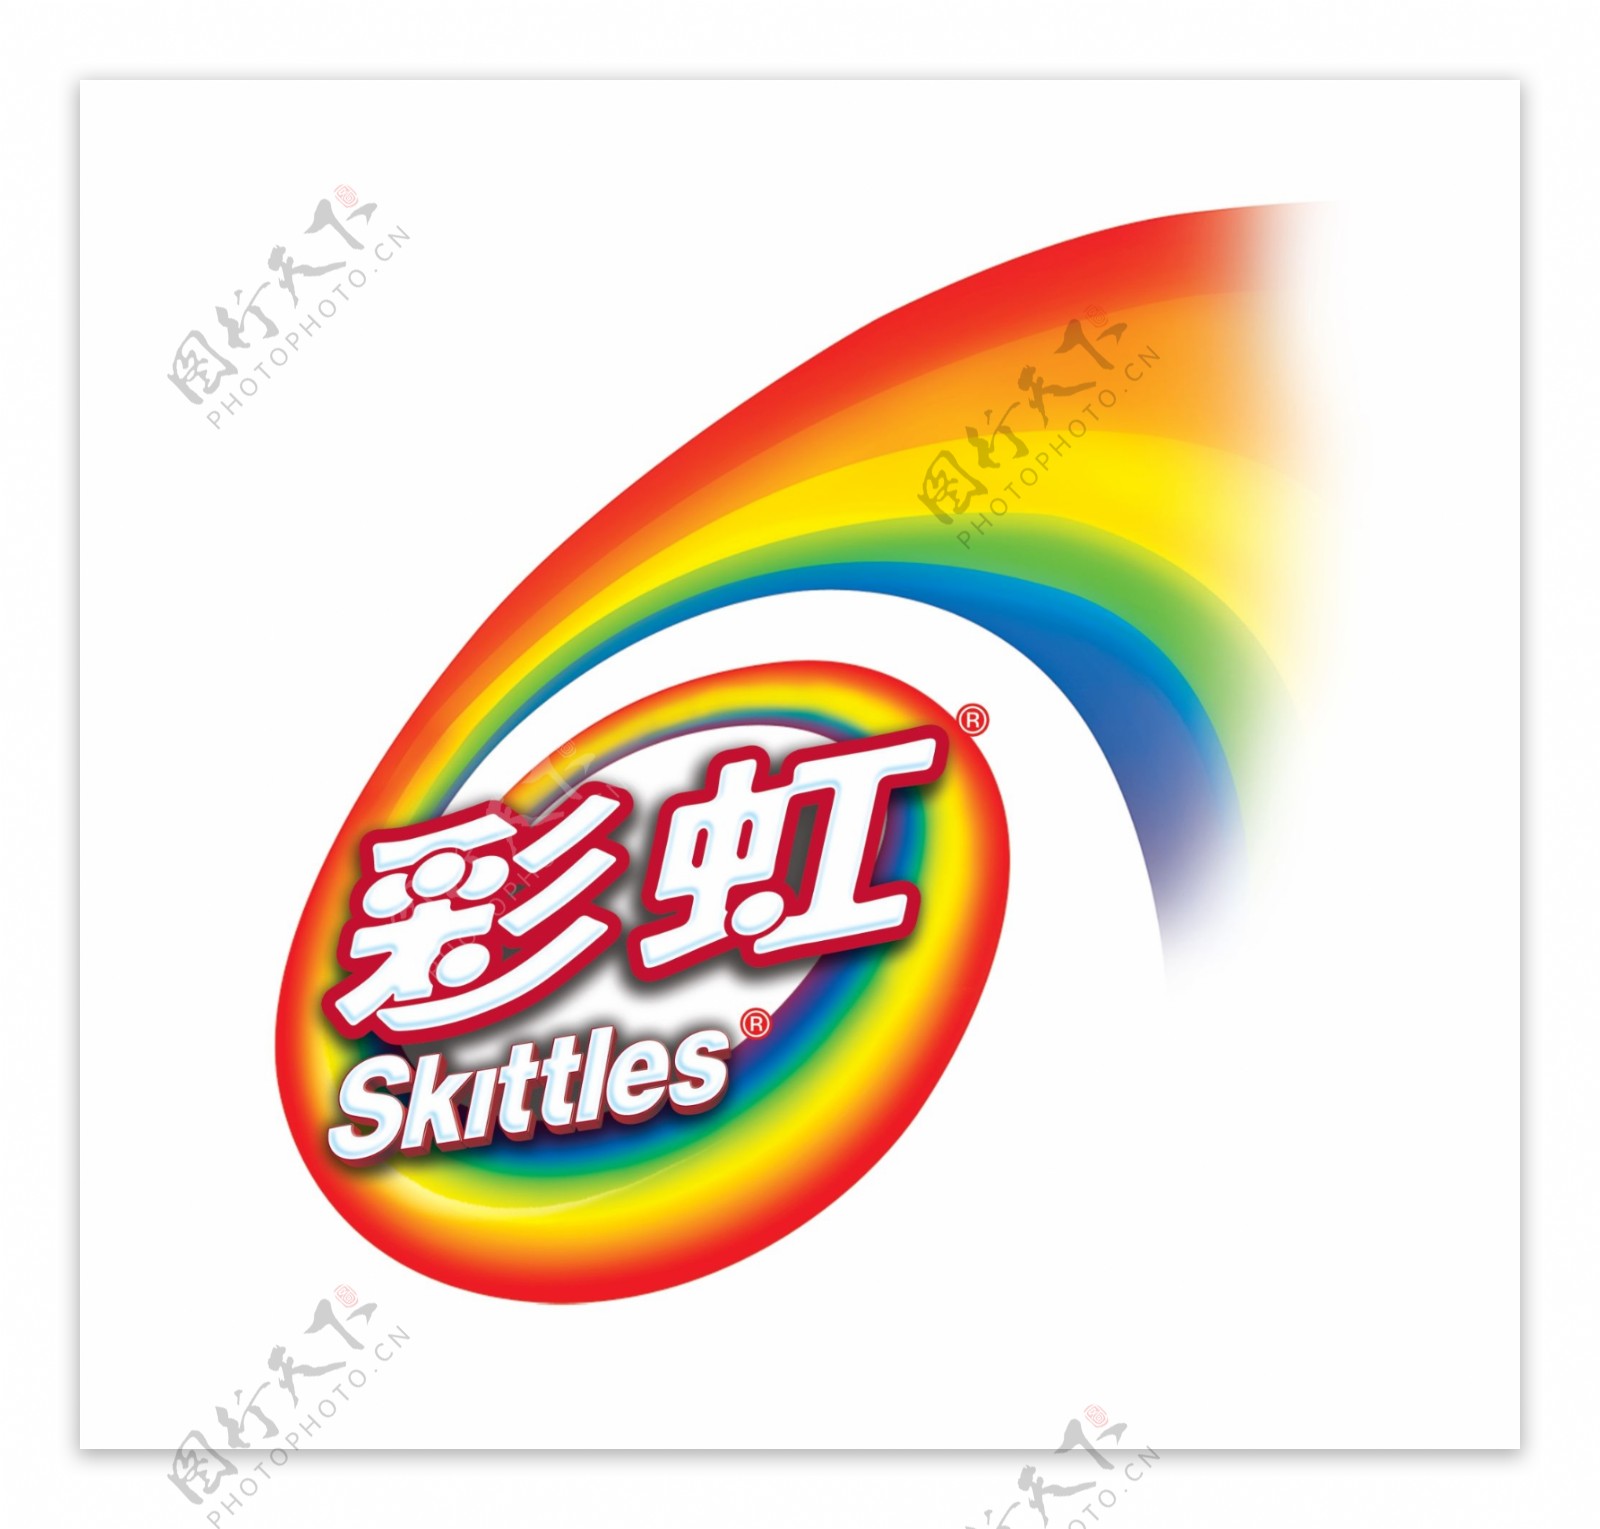 彩虹糖标志